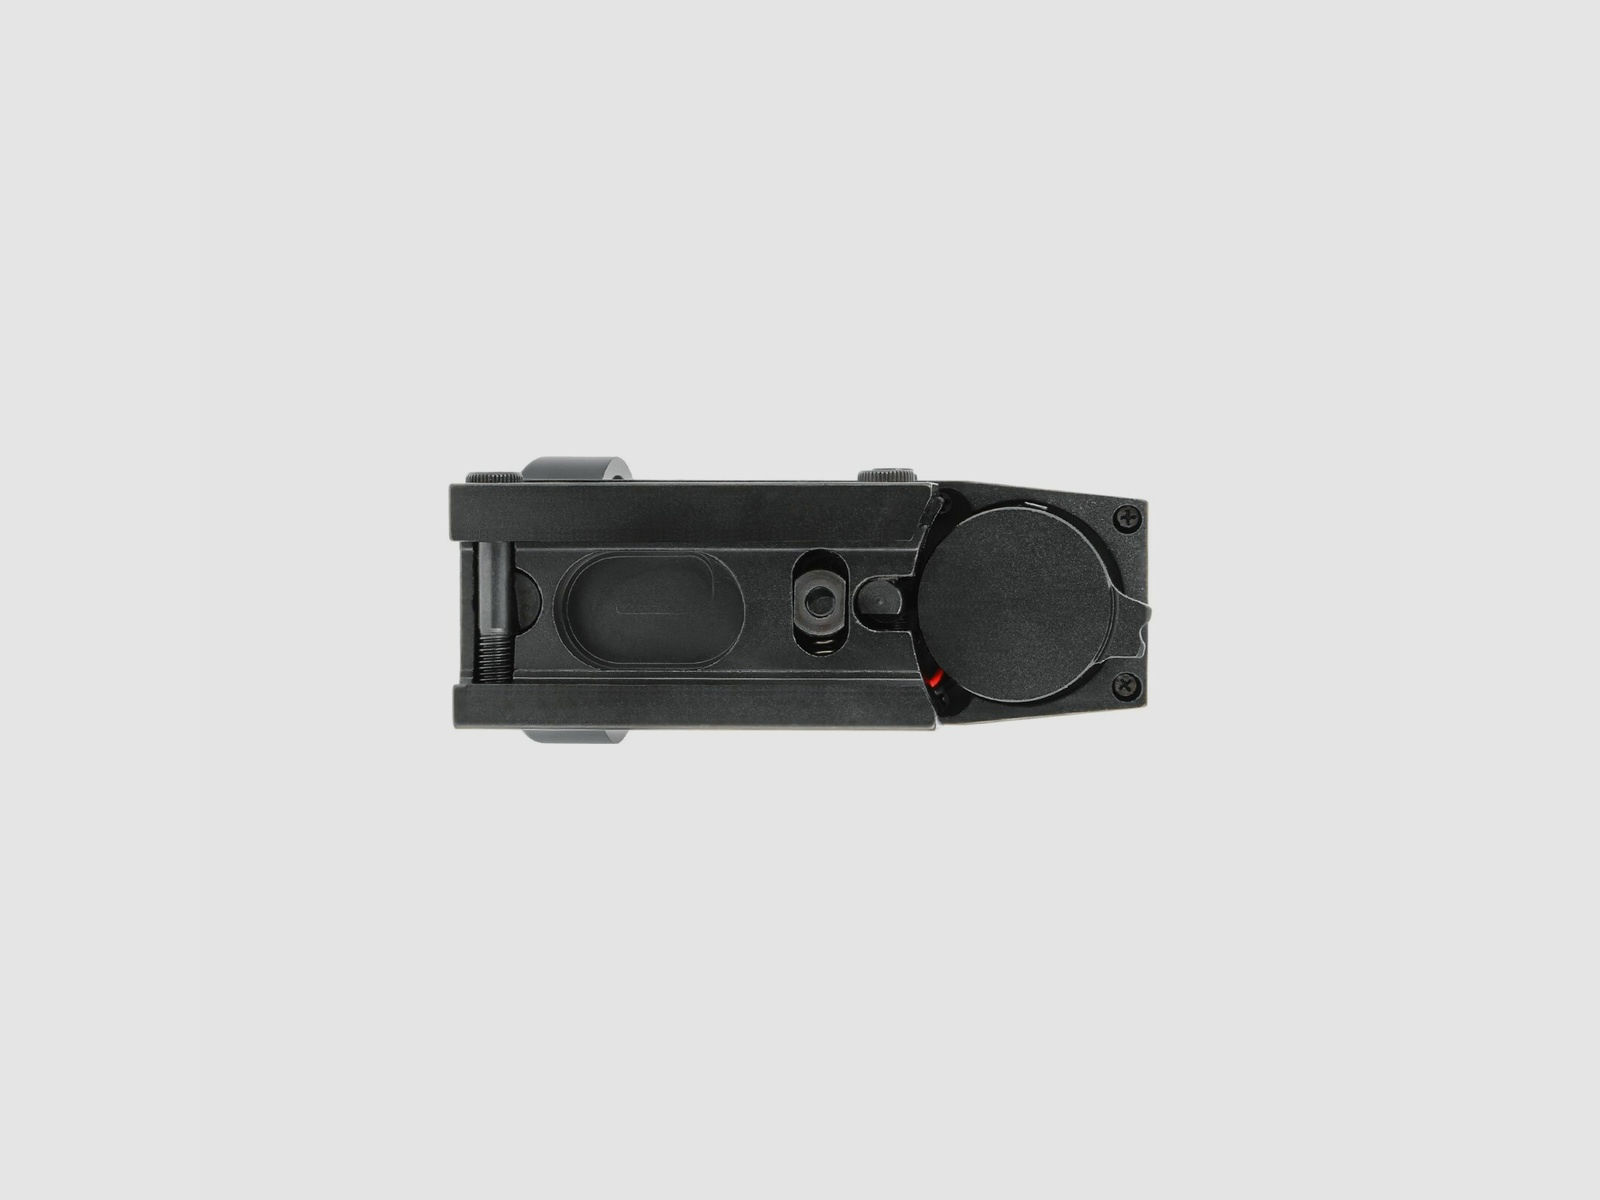 4komma5 HD101 1x33 Red Dot / Leuchtpunktvisier mit Weaver-Montage